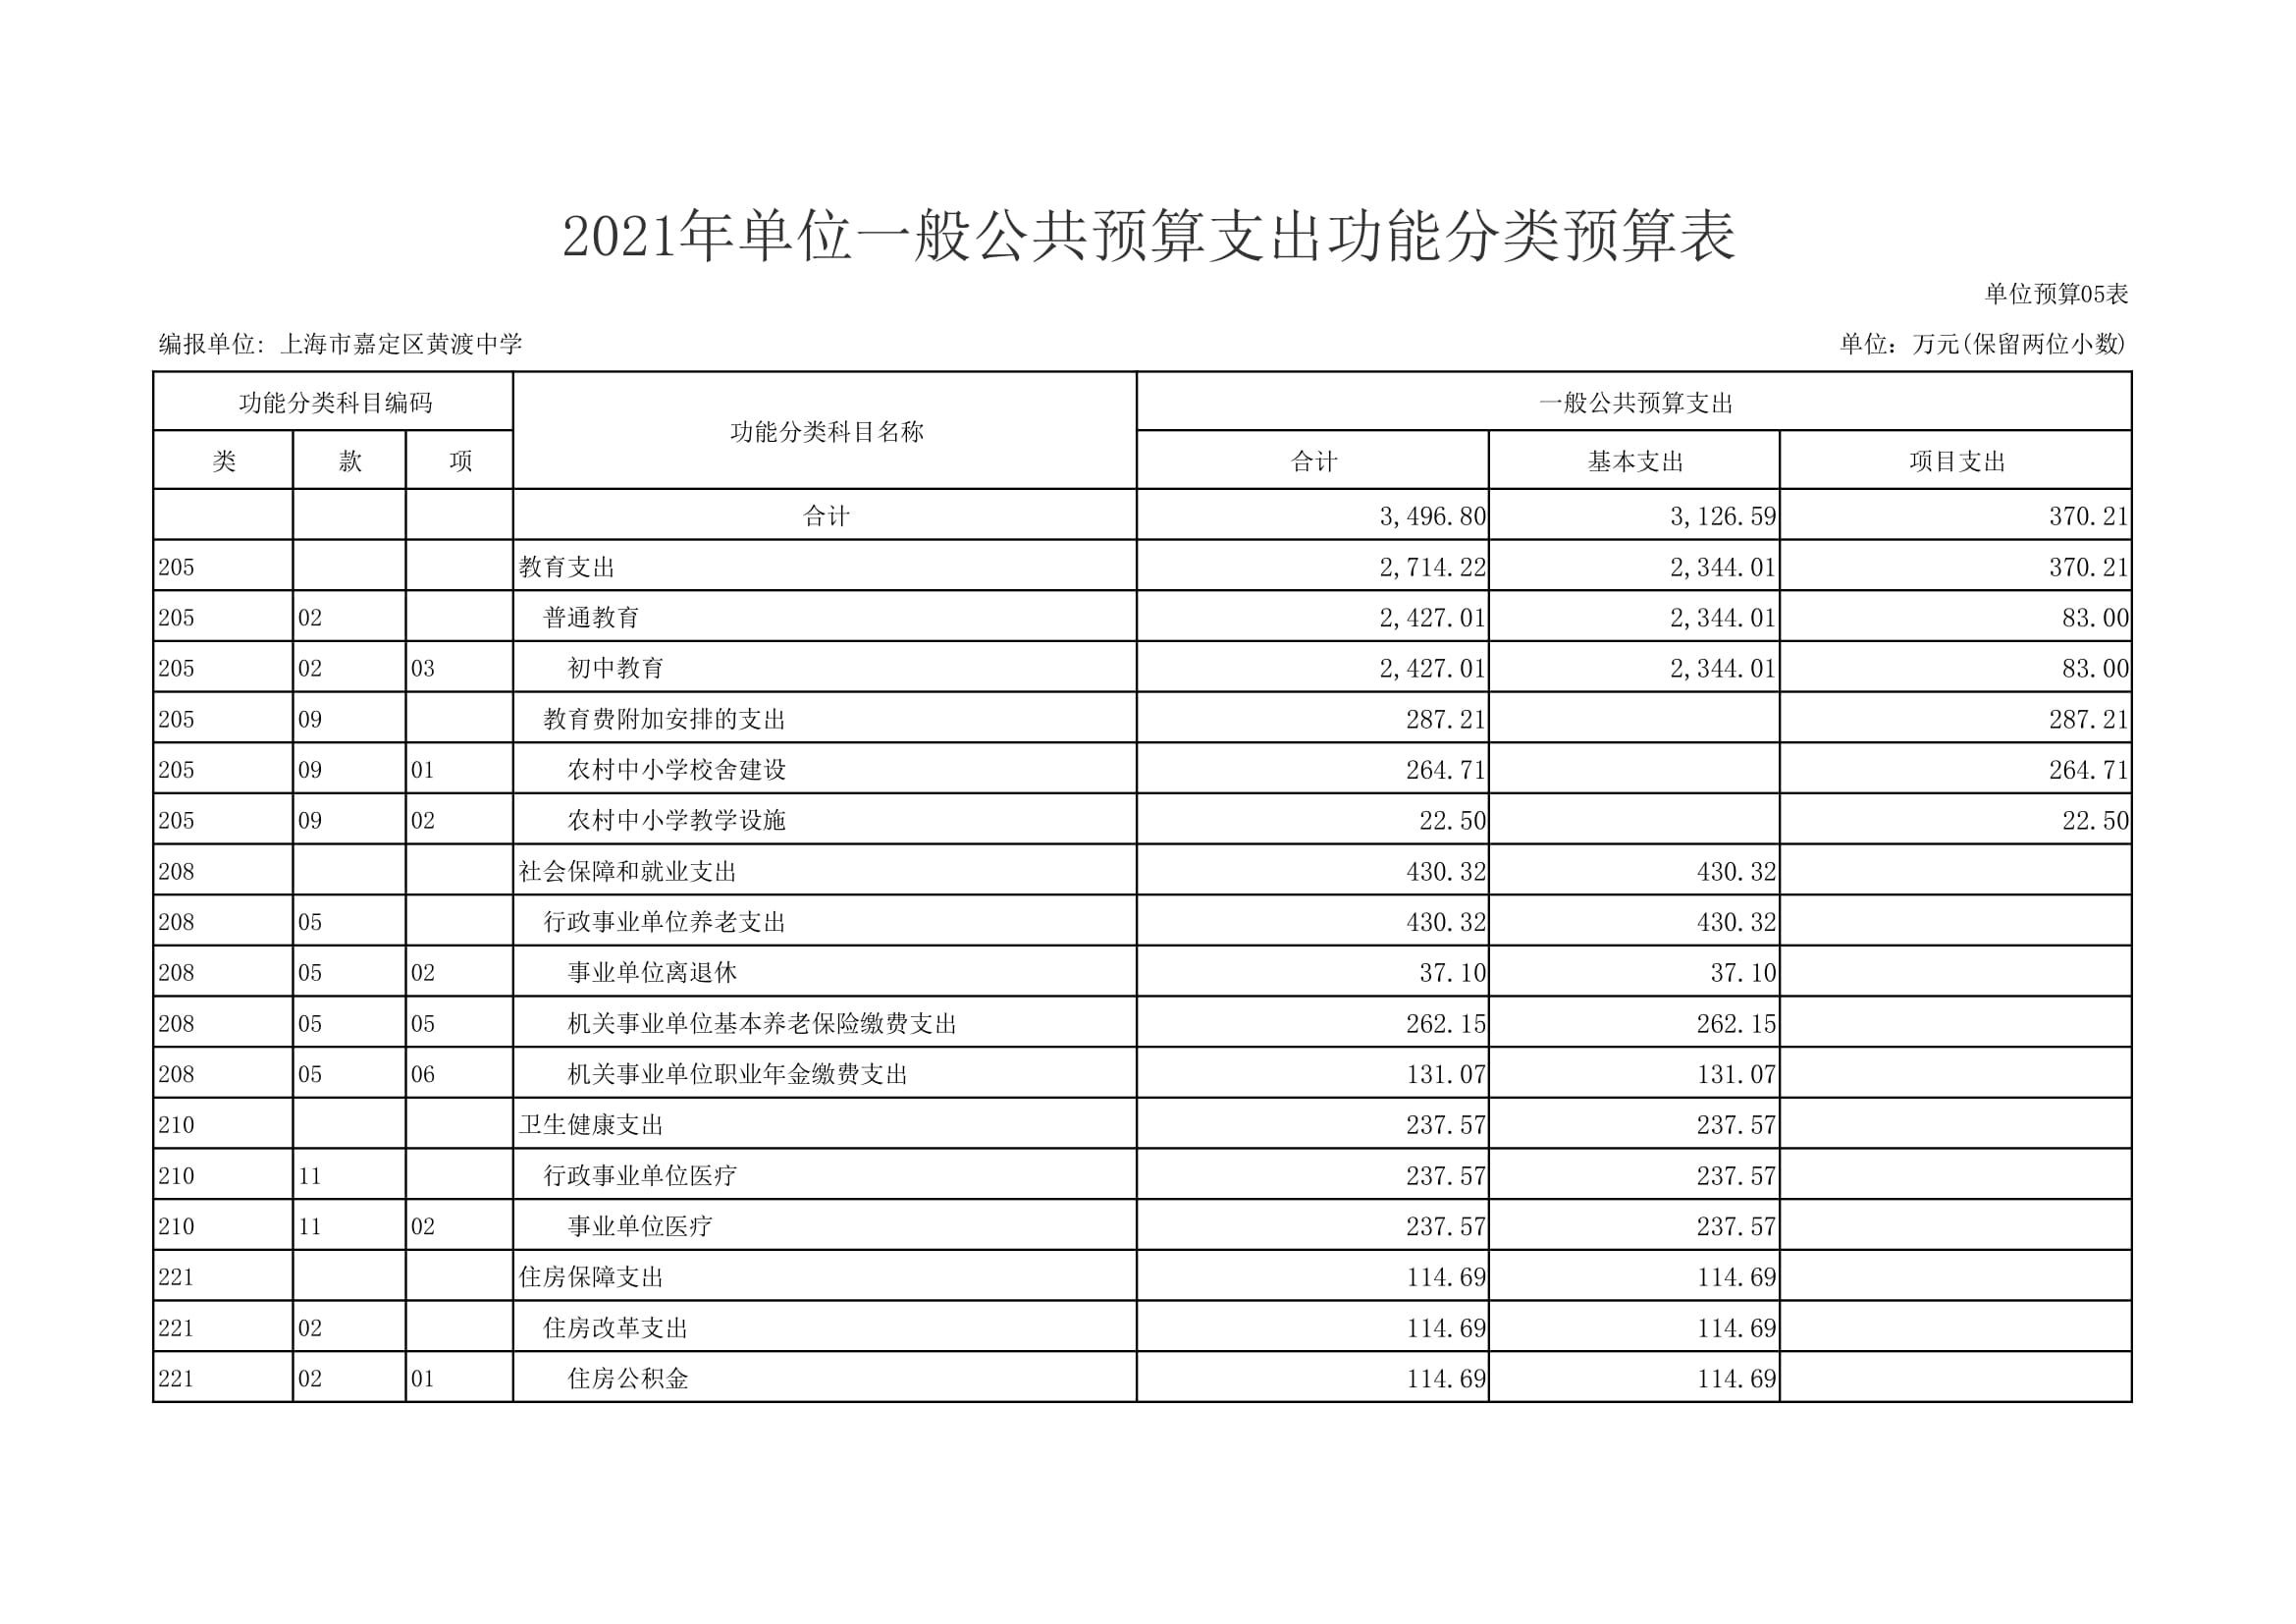 黄渡中学2021年单位支出预算表-12.jpg